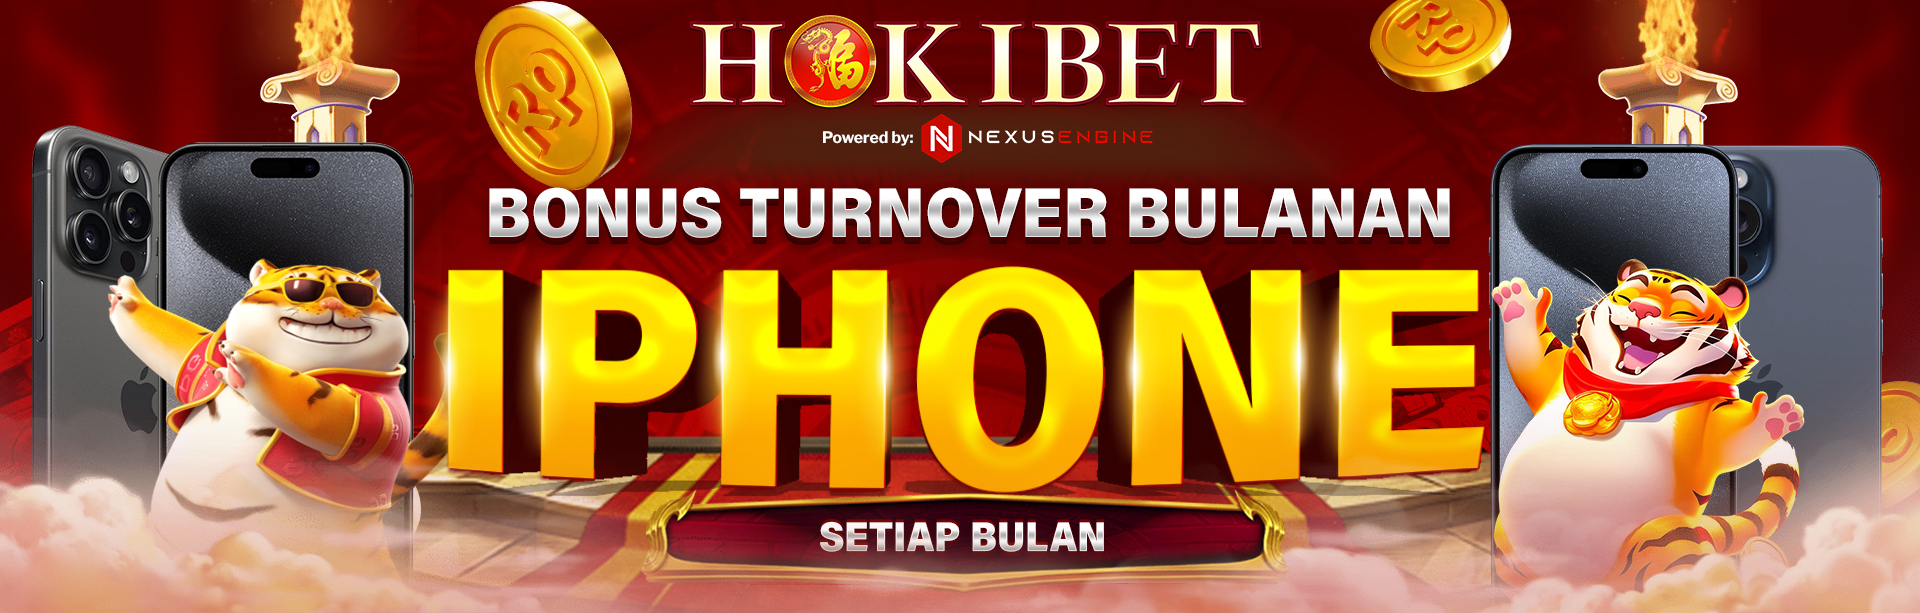 Bonus Turnover Bulanan Berhadiah Iphone